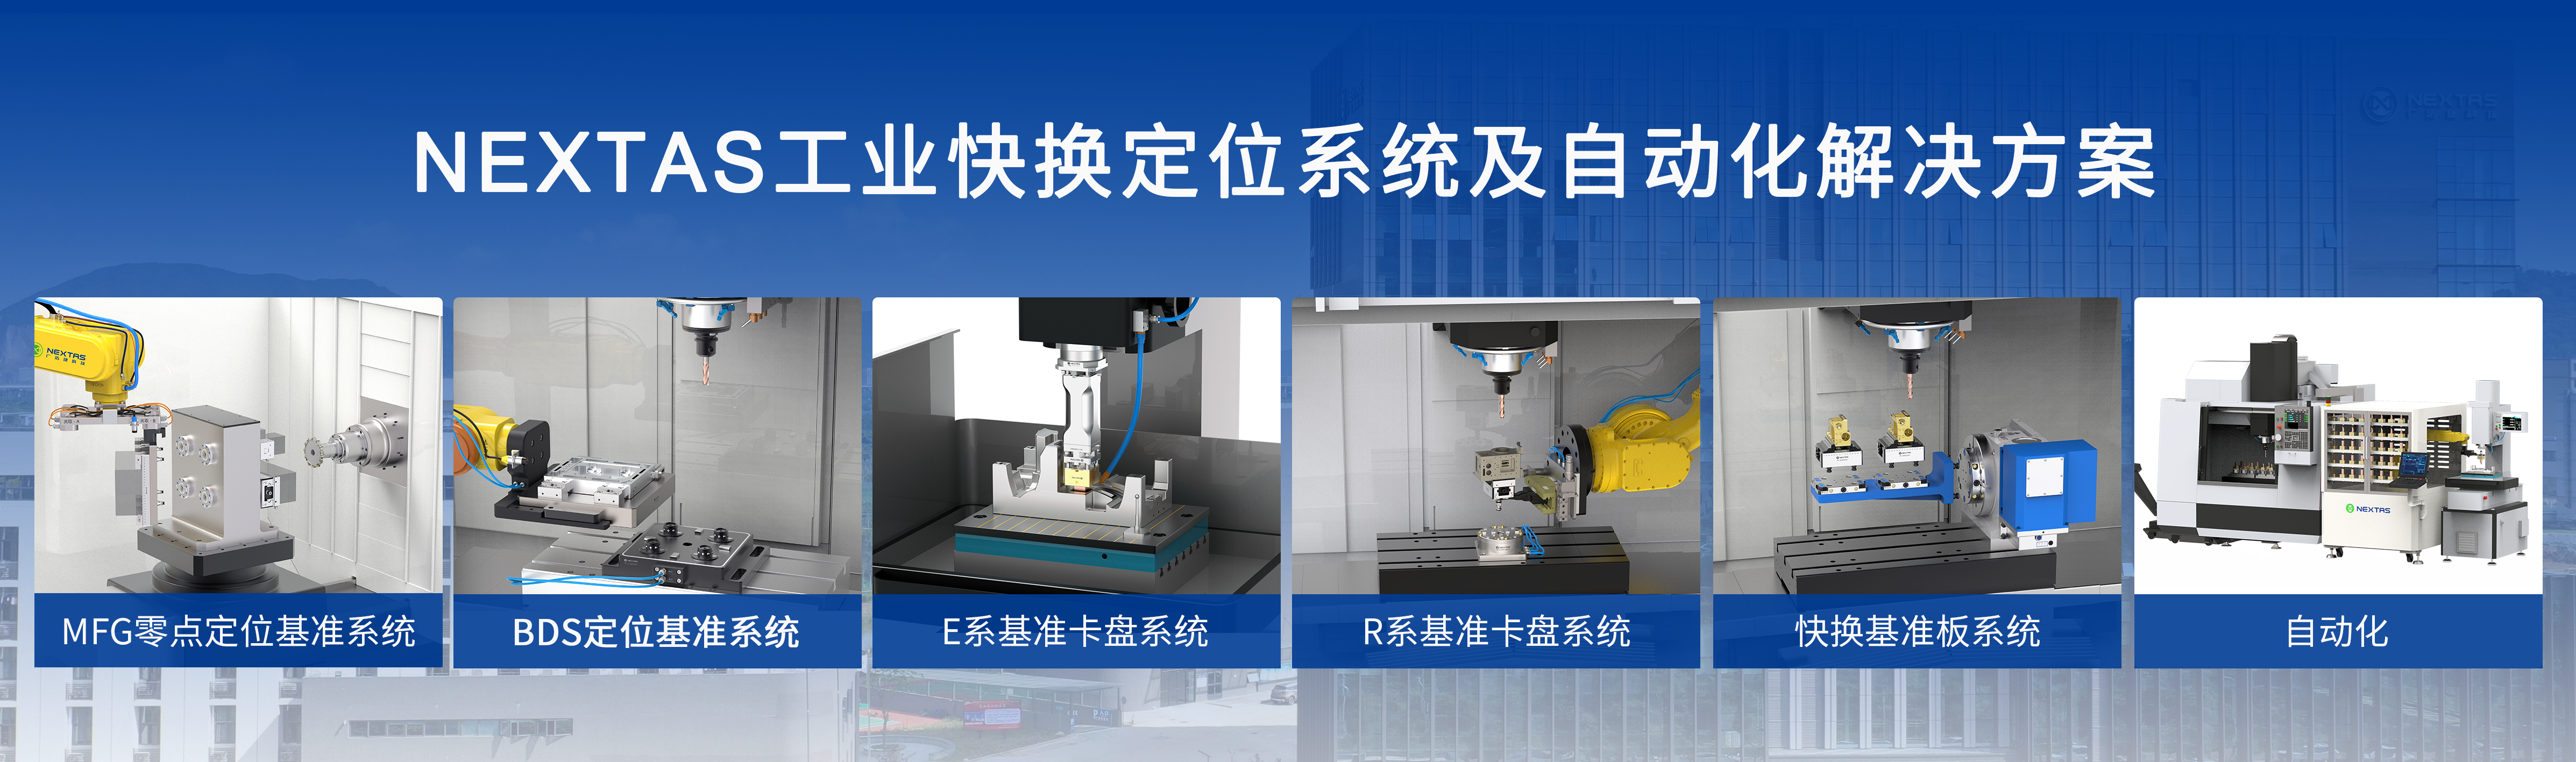 CCMT | 广浩捷工业快换产品，助力工业制造创新发展！